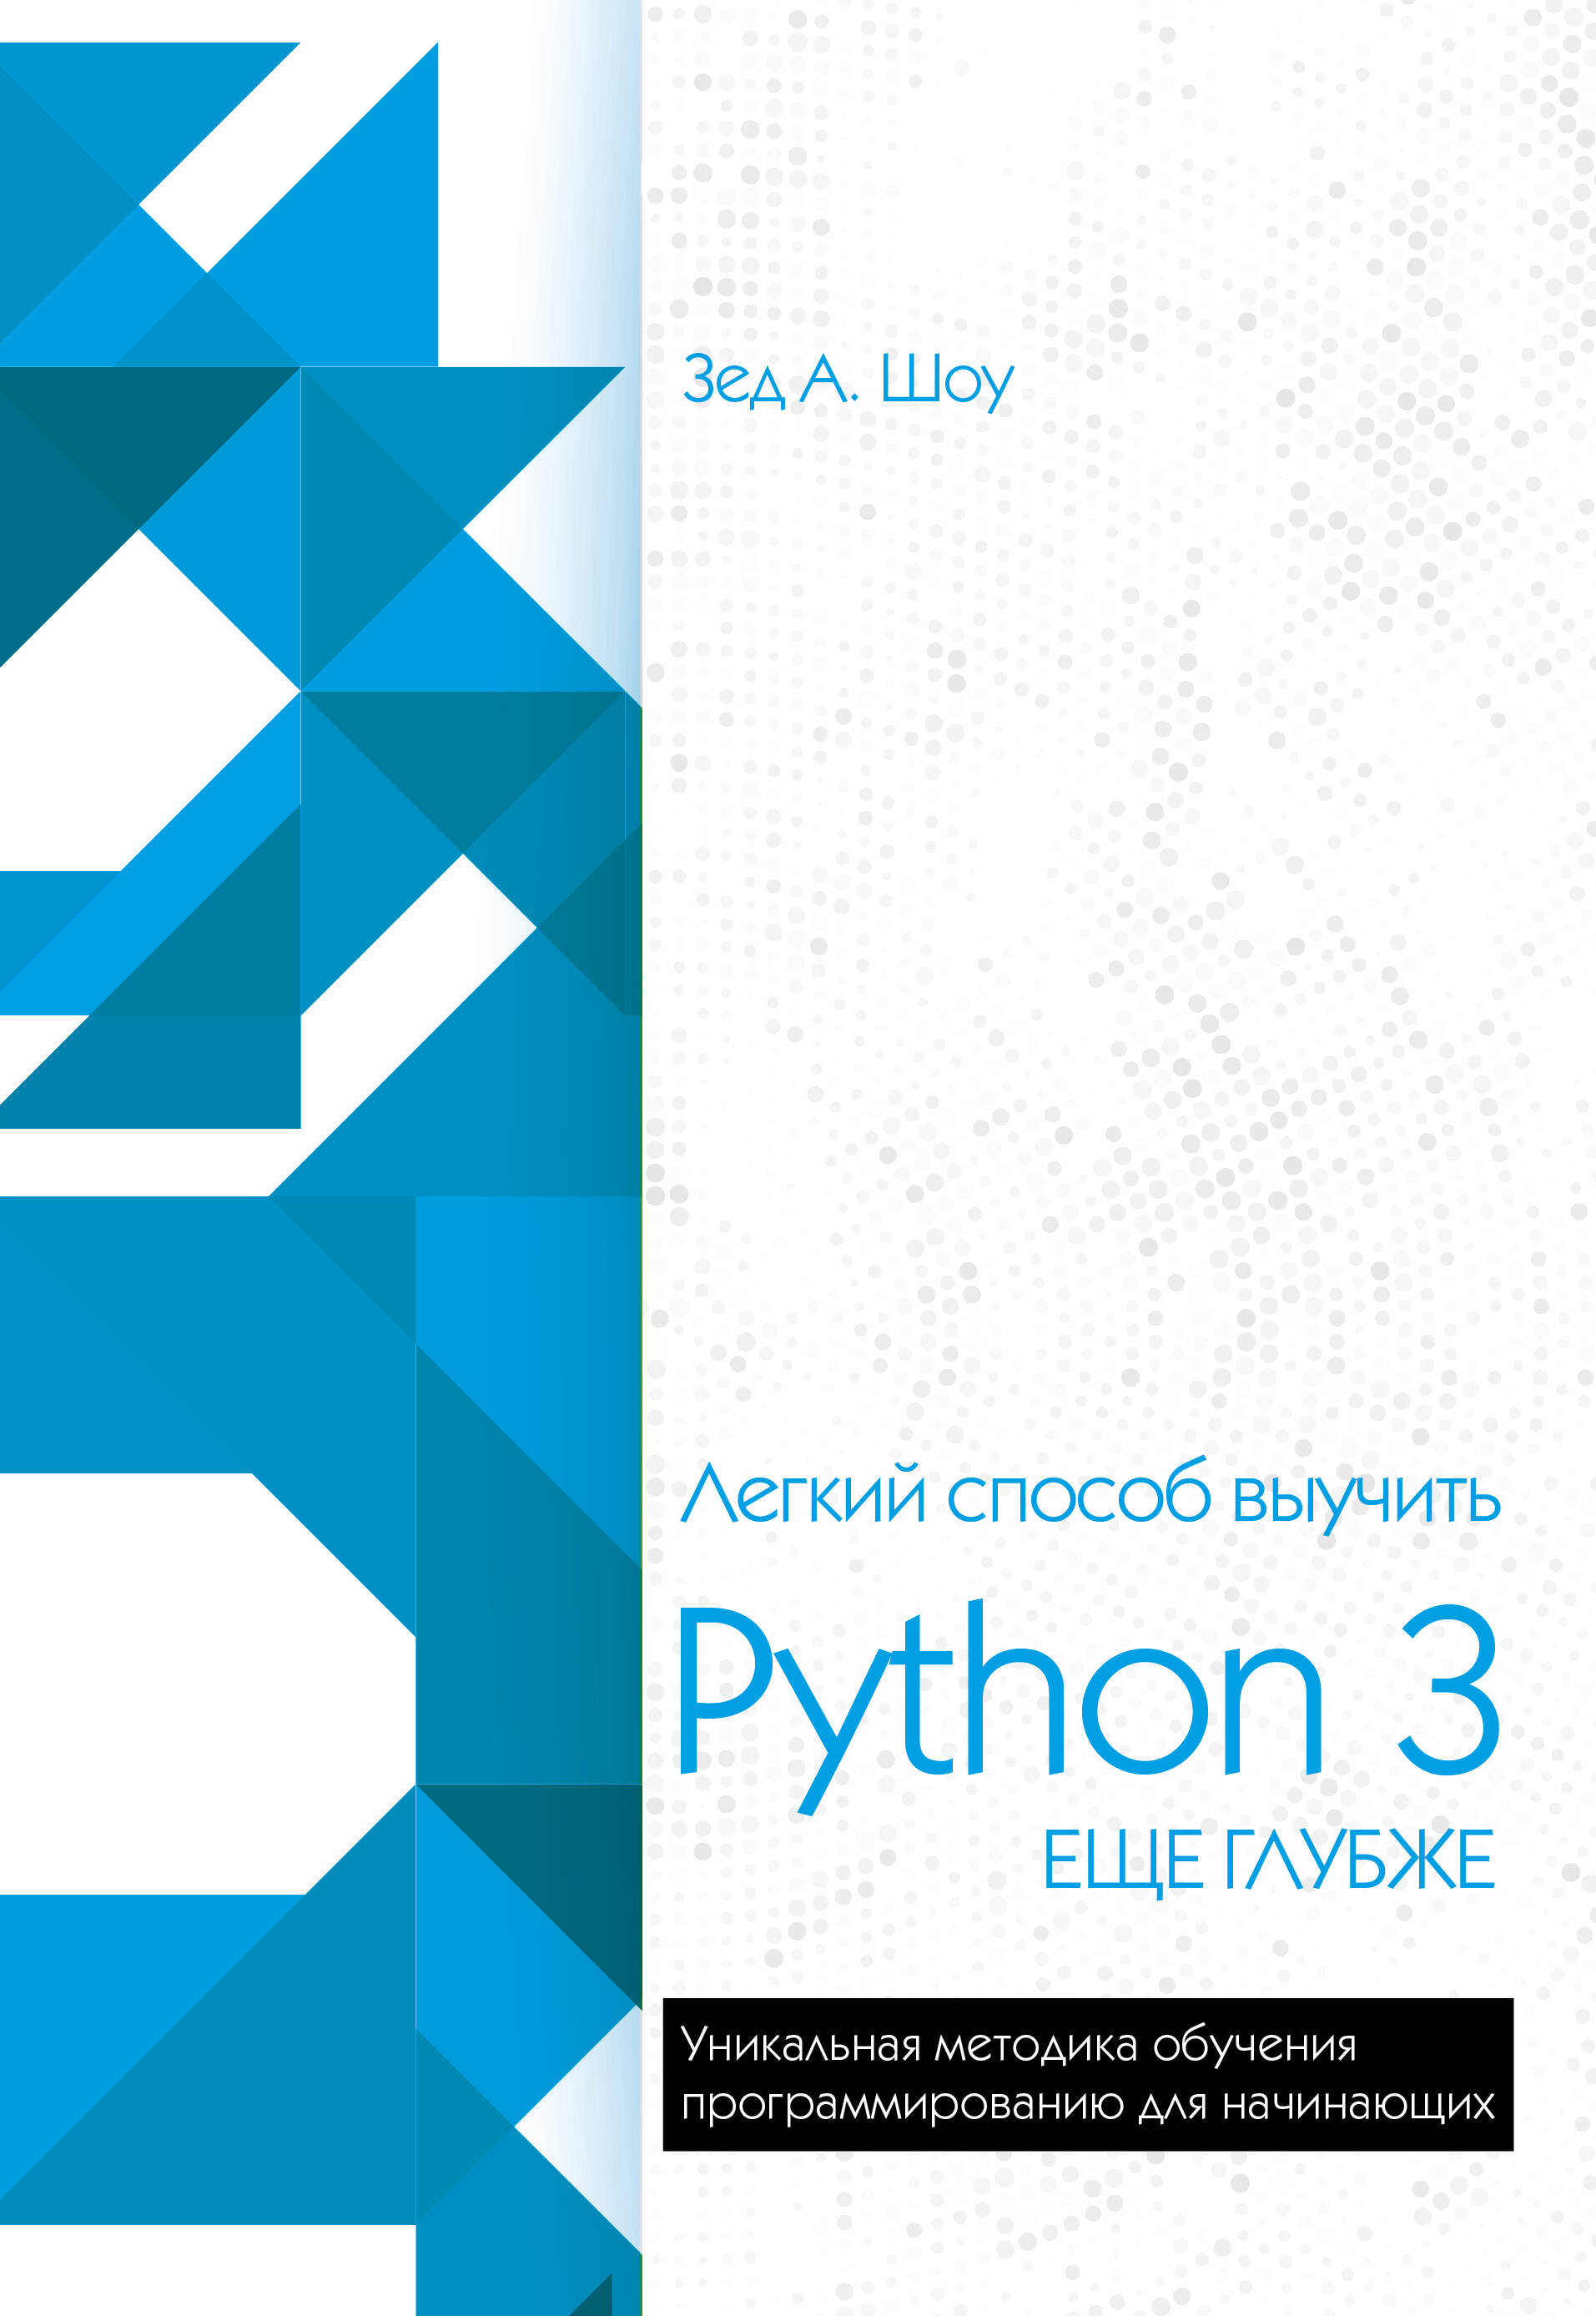 внутри cpython гид по интерпретатору python шоу э Шоу Зед А. Легкий способ выучить Python 3 еще глубже